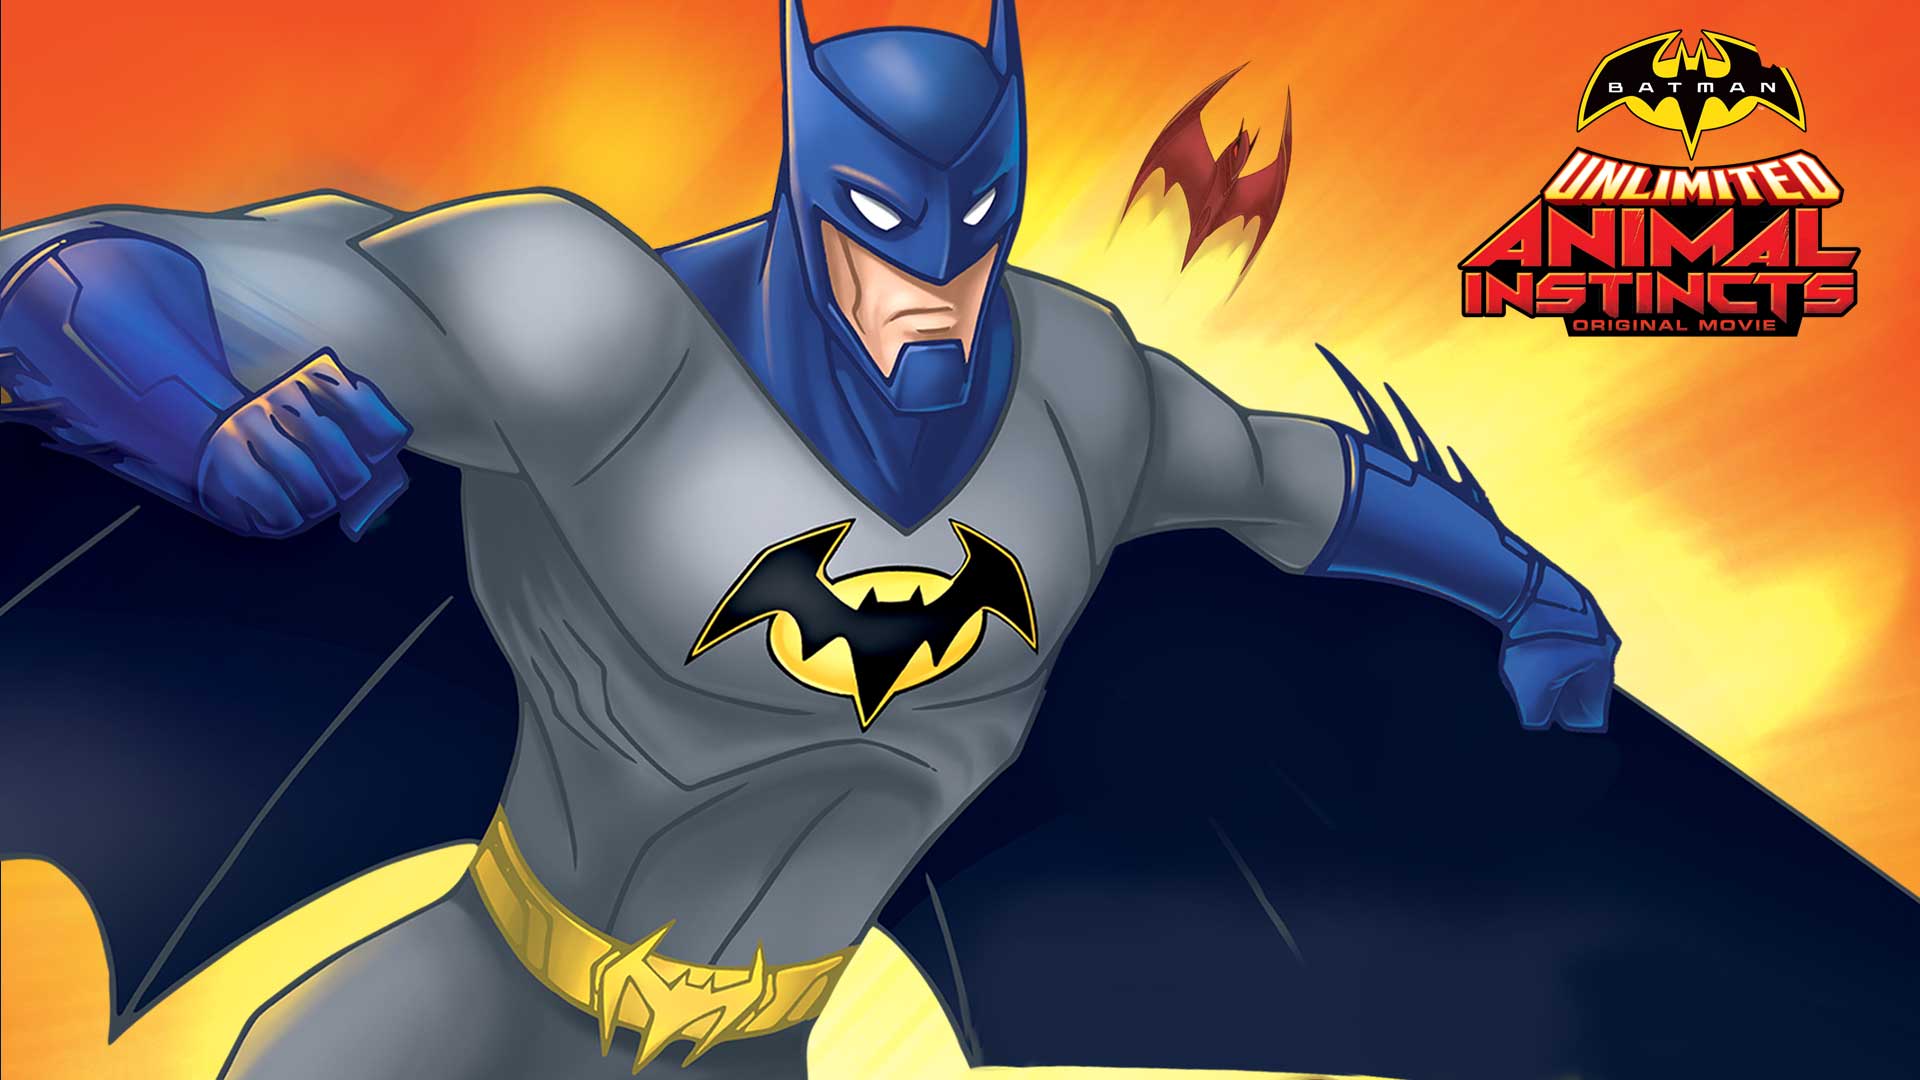 Meilleurs fonds d'écran Batman Unlimited: L'instinct Animal pour l'écran du téléphone